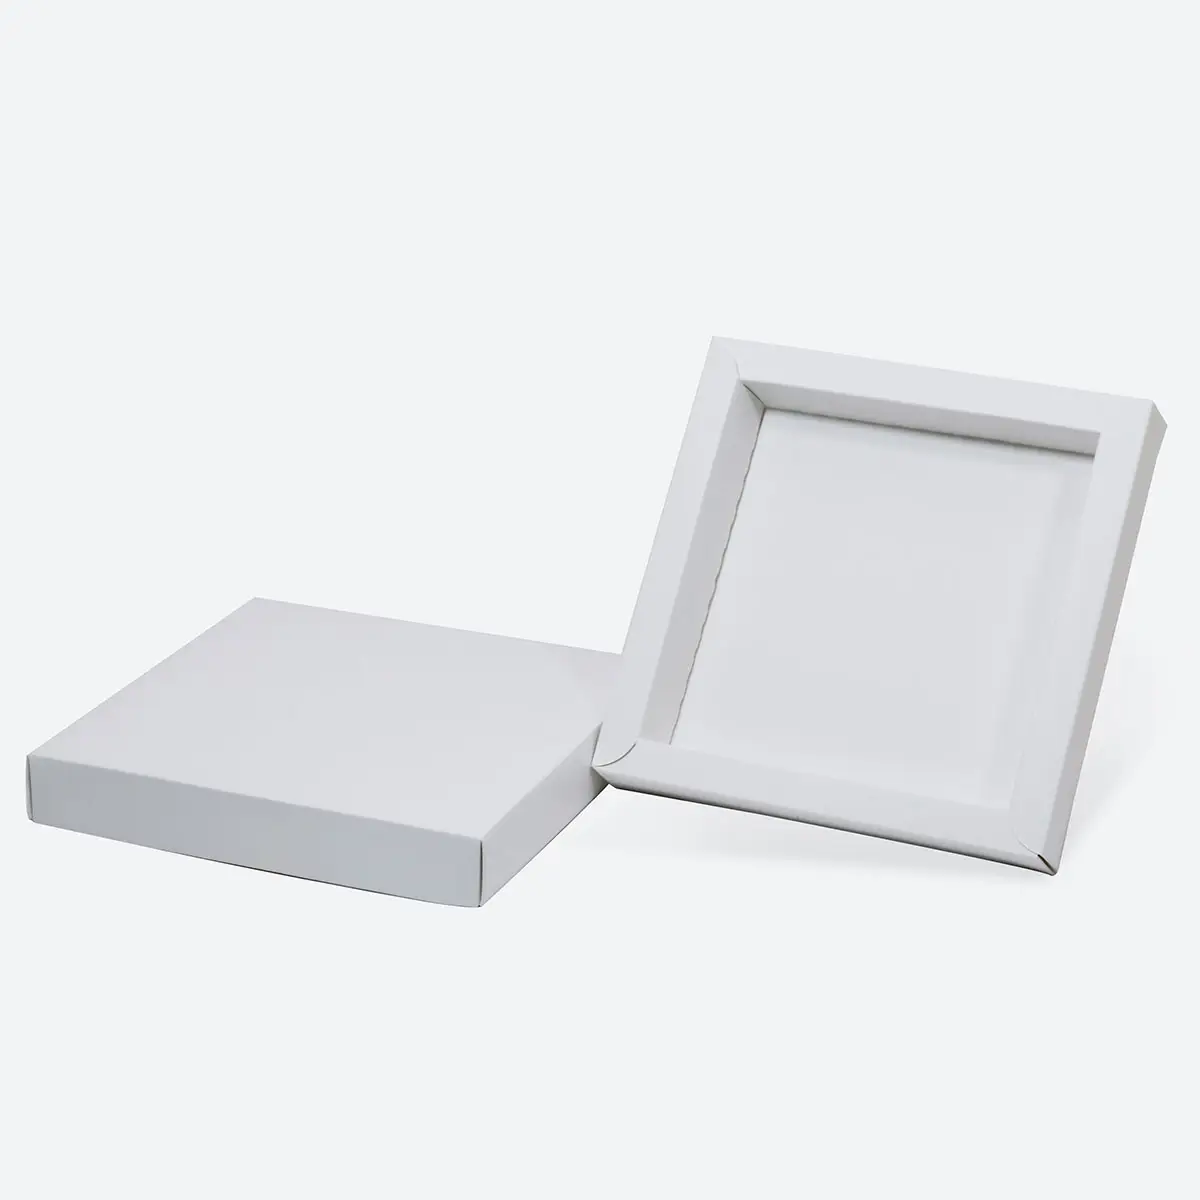 Neues Design Papierbox Schokoladebox ohne Deckel großer Raum für Zuckerwaren und Schokolade Verpackungsbox